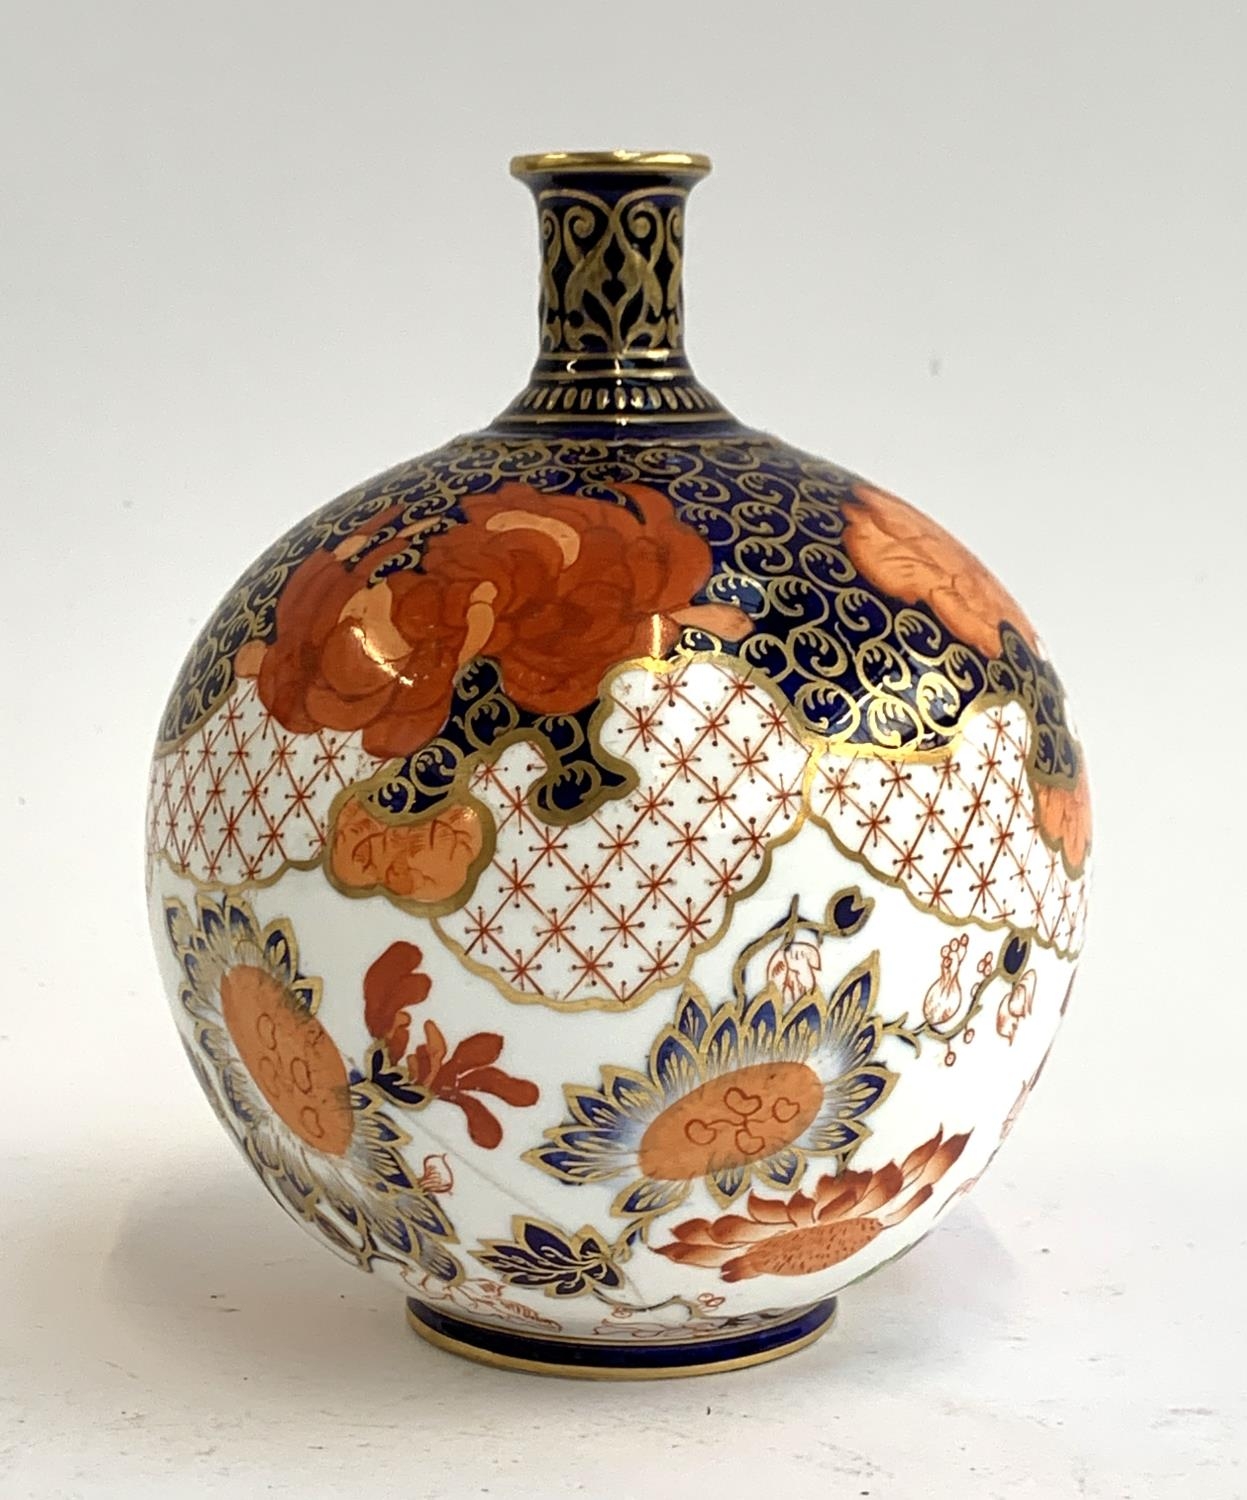 A Royal Crown Derby bottle vase, 16.5cmH - Image 2 of 3